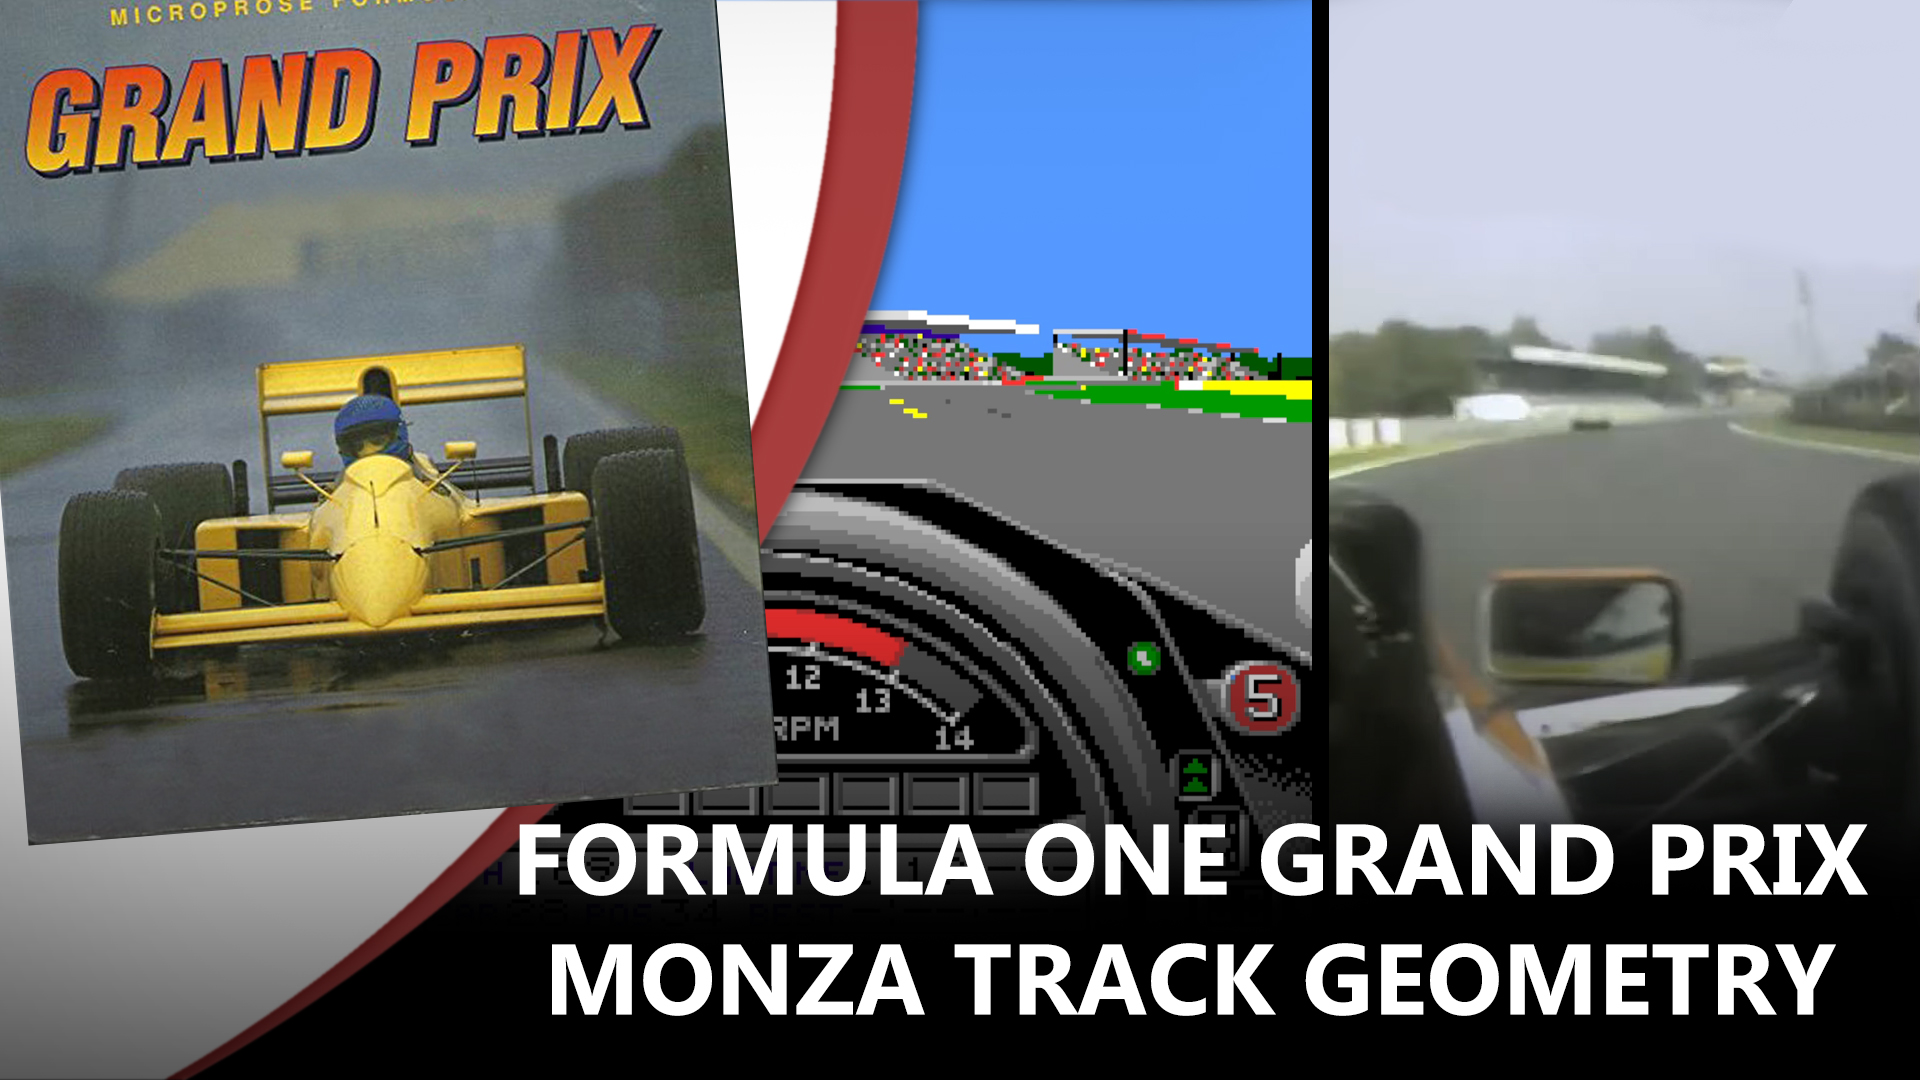 Monza Track Geometry Comparison in Formula One Grand Prix